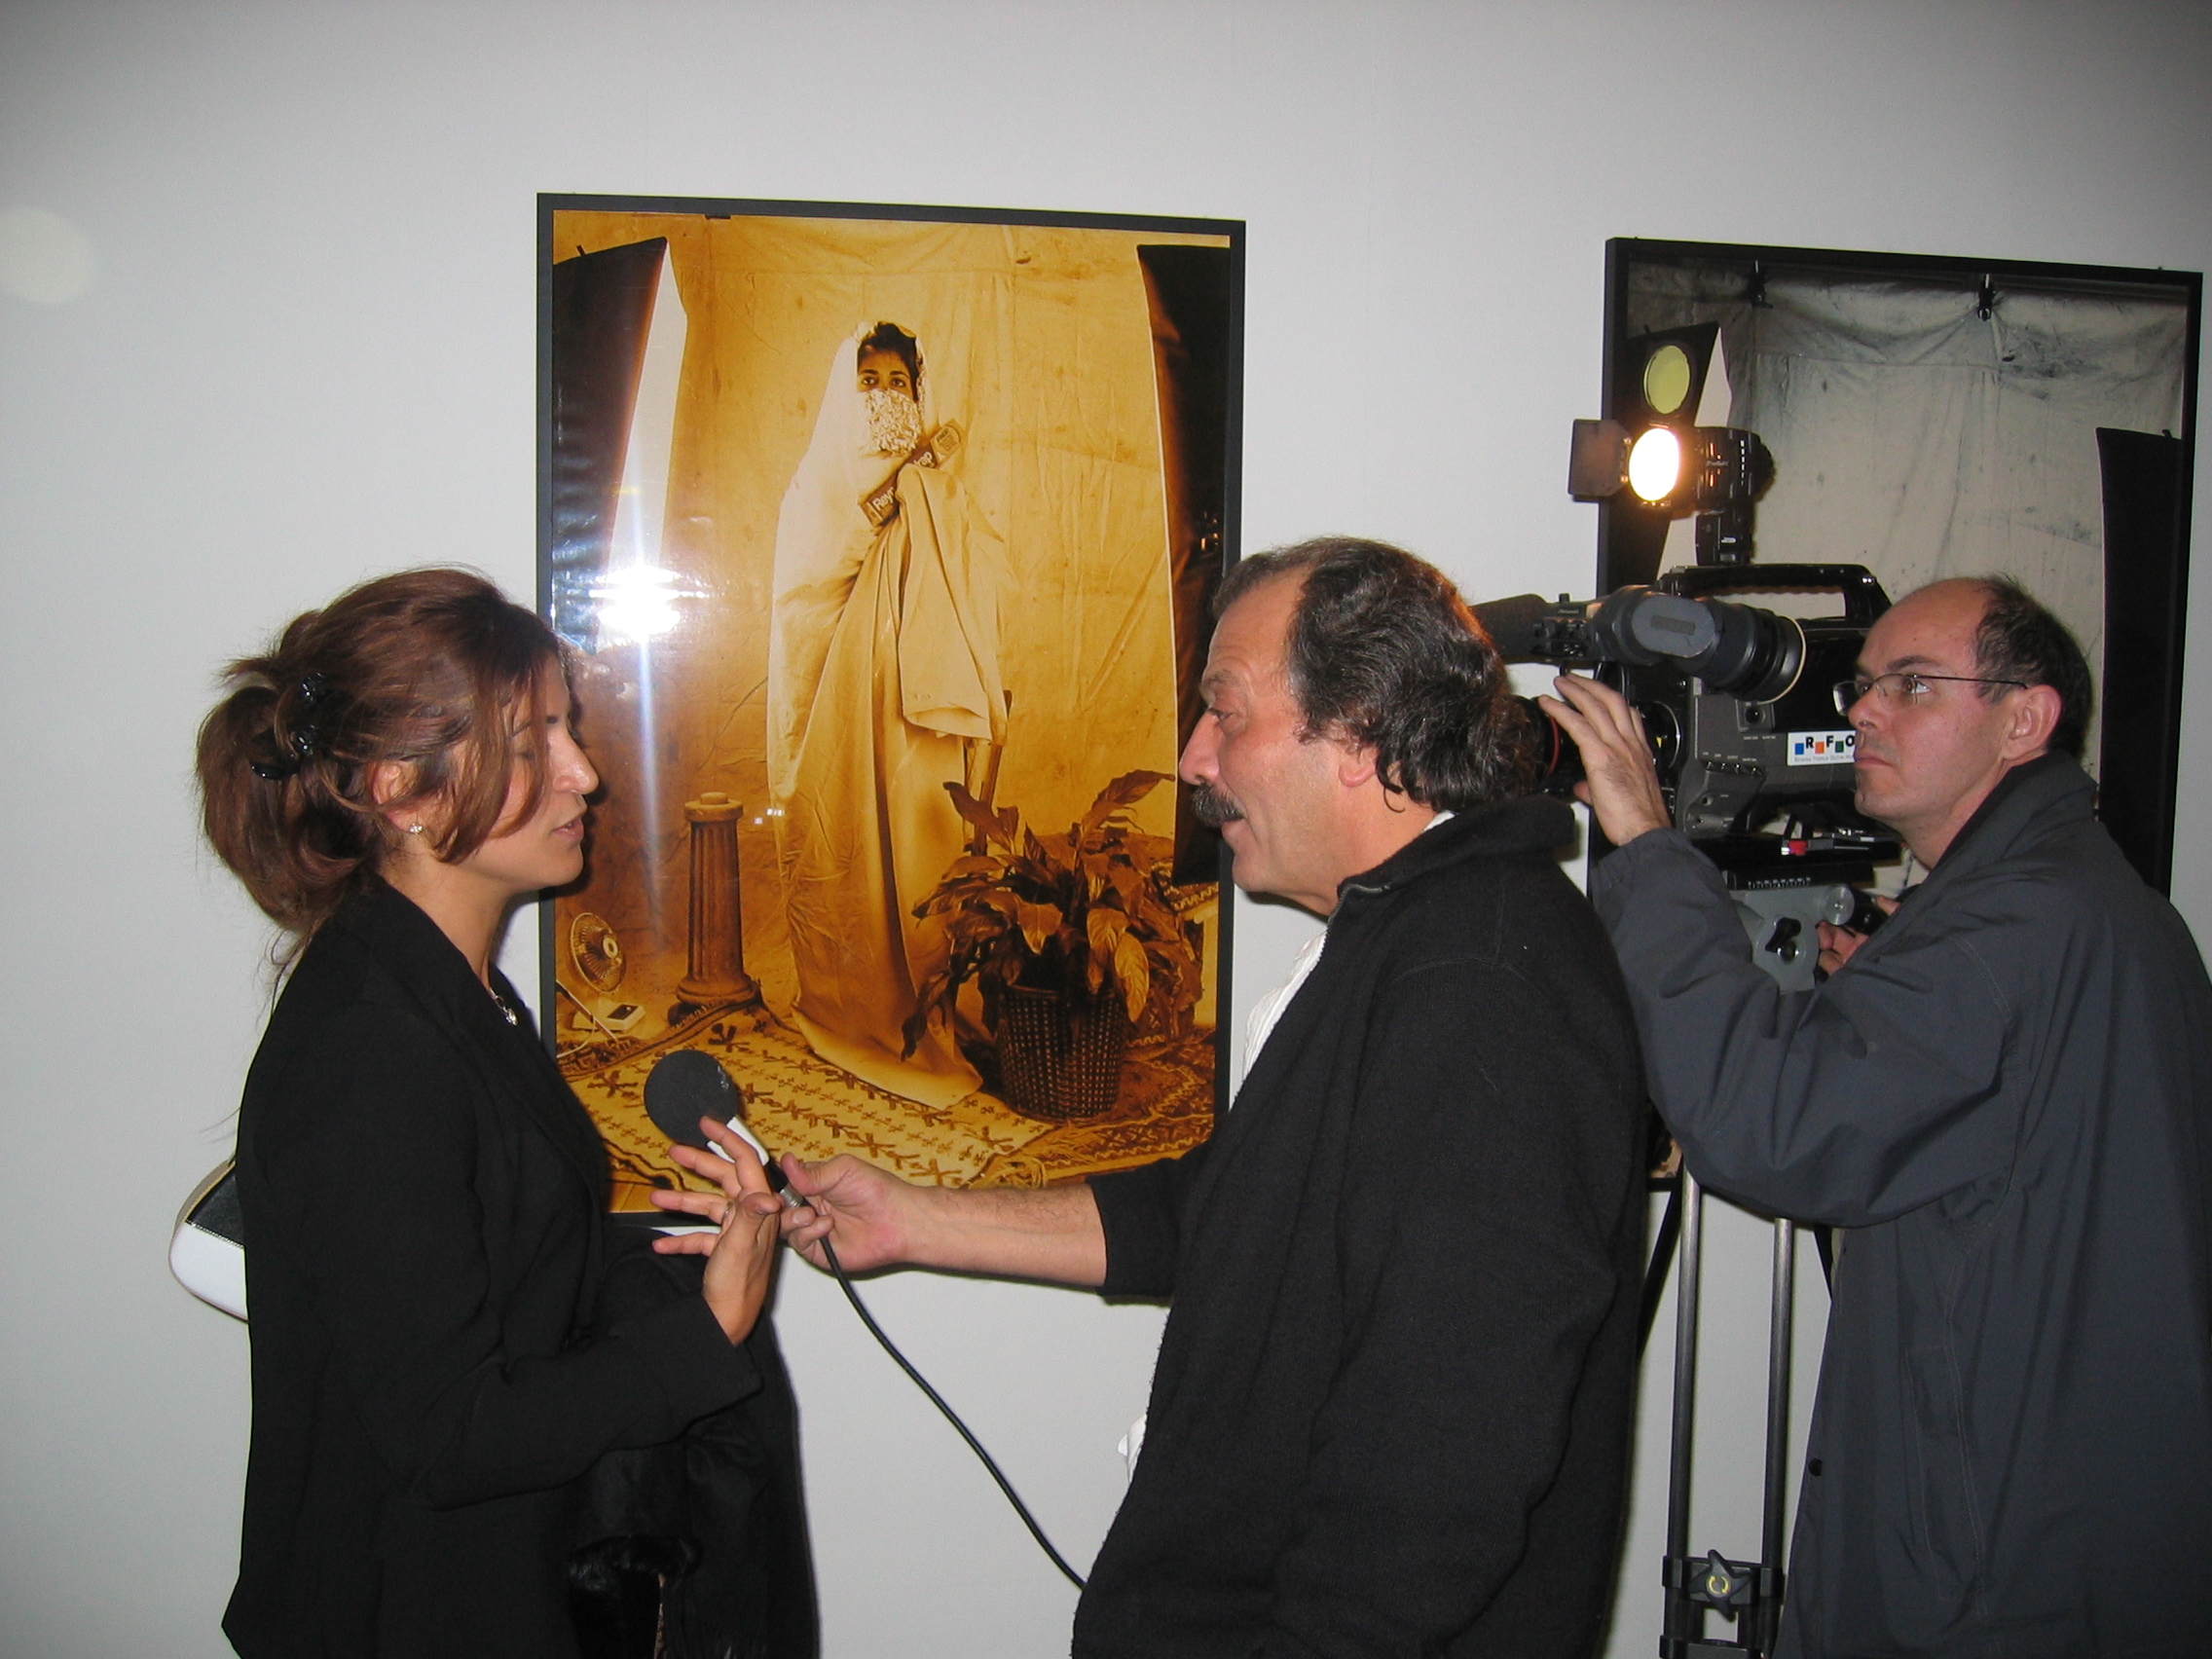 Yasmina Bouziane interviewed on her photographic work exhibited in Paris, France at L'Institute du Monde Arabe.